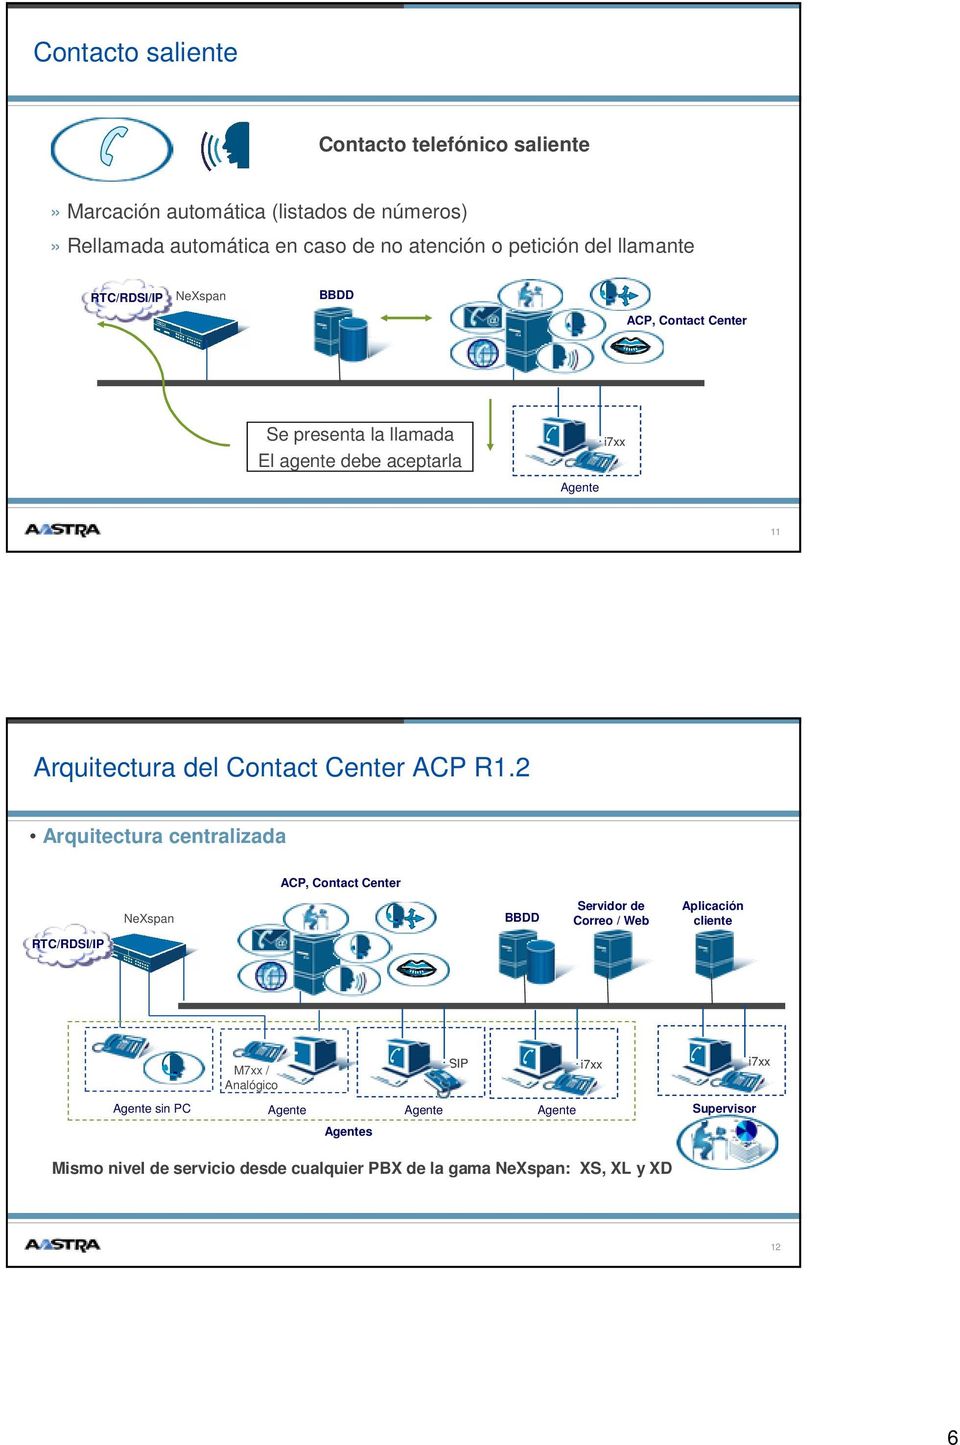 Arquitectura del Contact Center ACP R1.